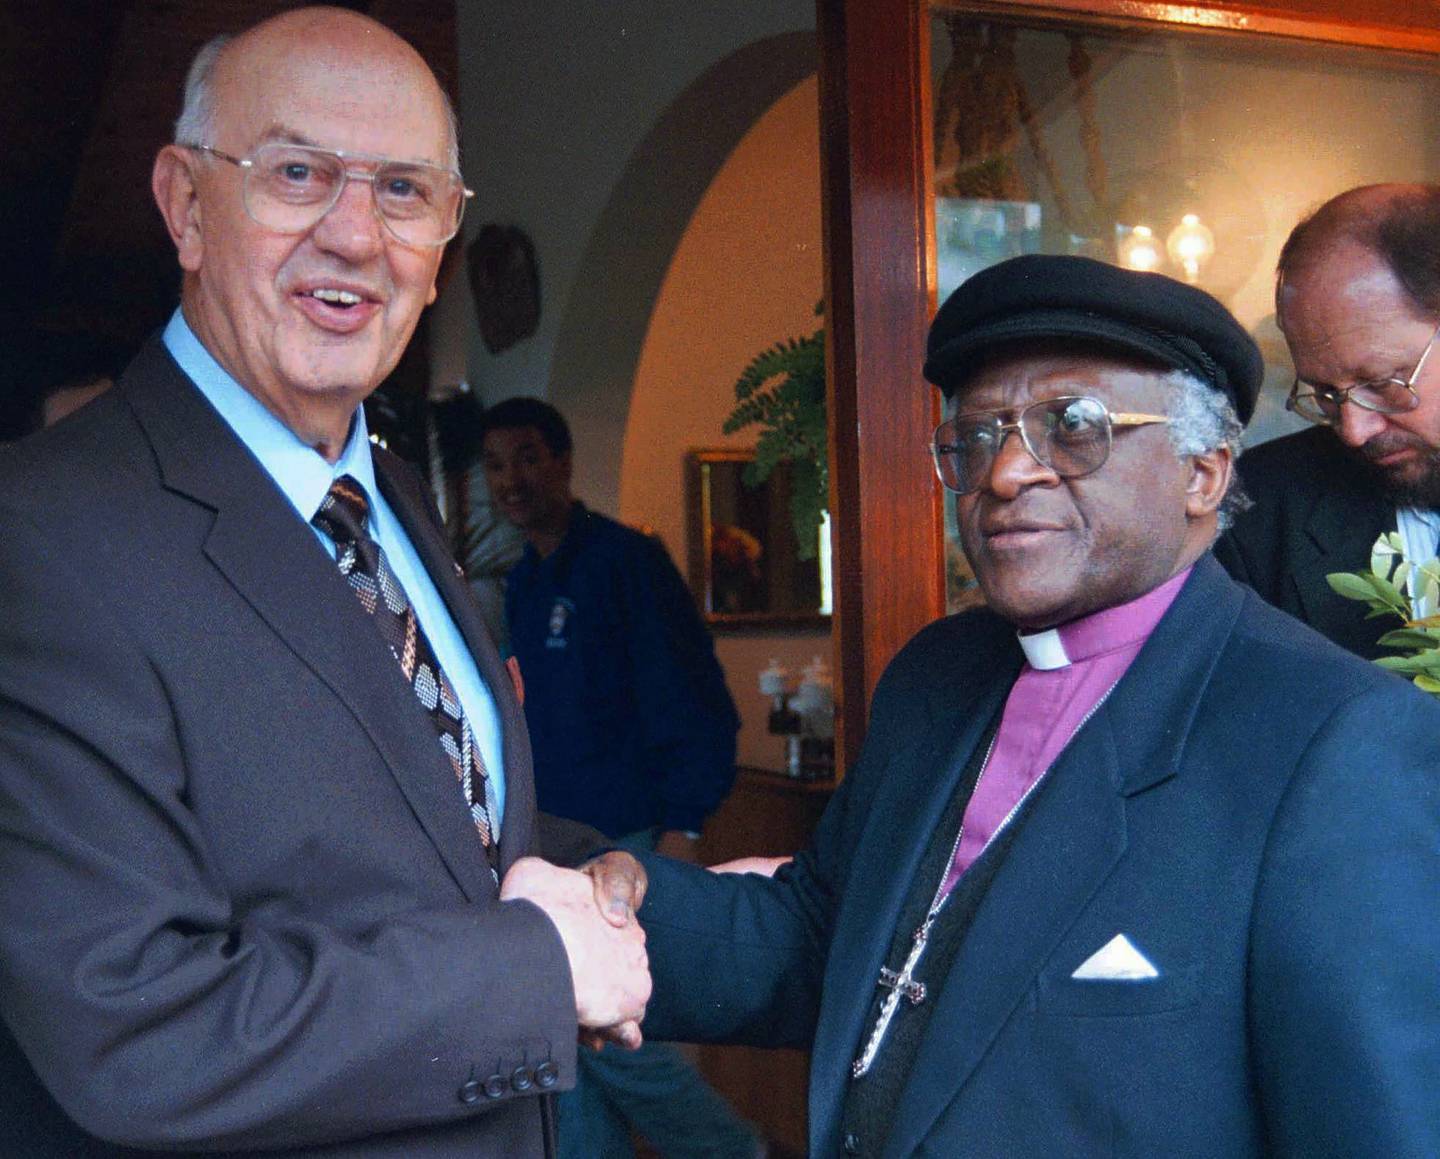 Erkebiskop Desmond Tutu og tidligere president i Sør-Afrika P. W. Botha i 1996.